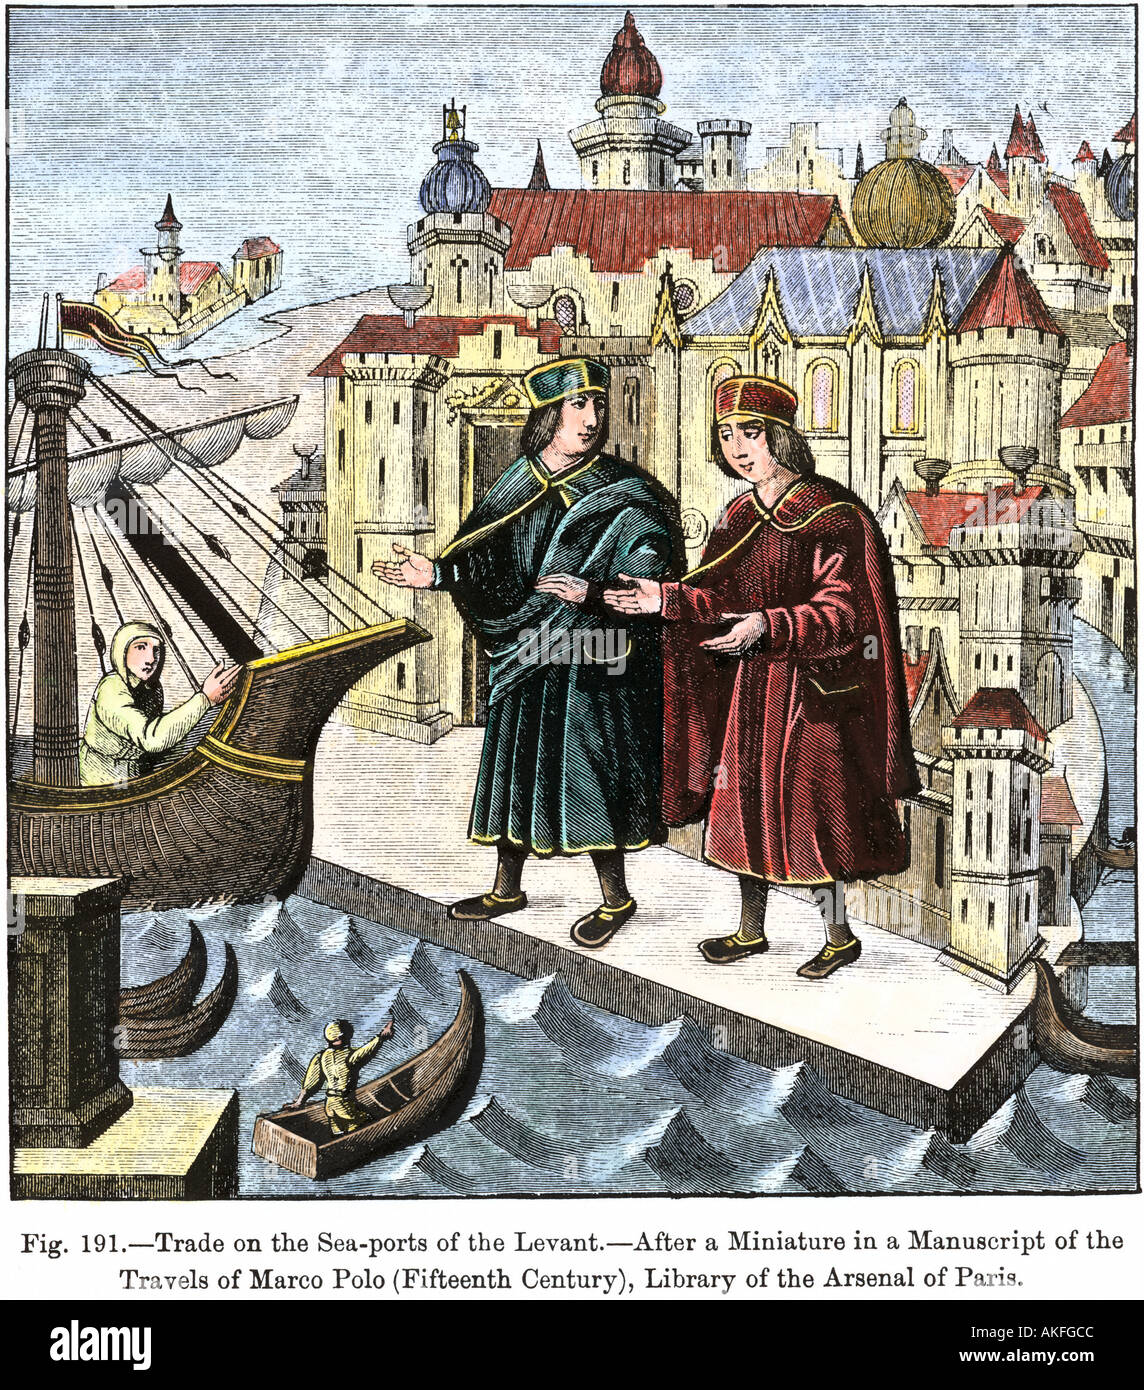 El comercio de un puerto marítimo del Mediterráneo en la época de Marco Polo. Xilografía coloreada a mano Foto de stock